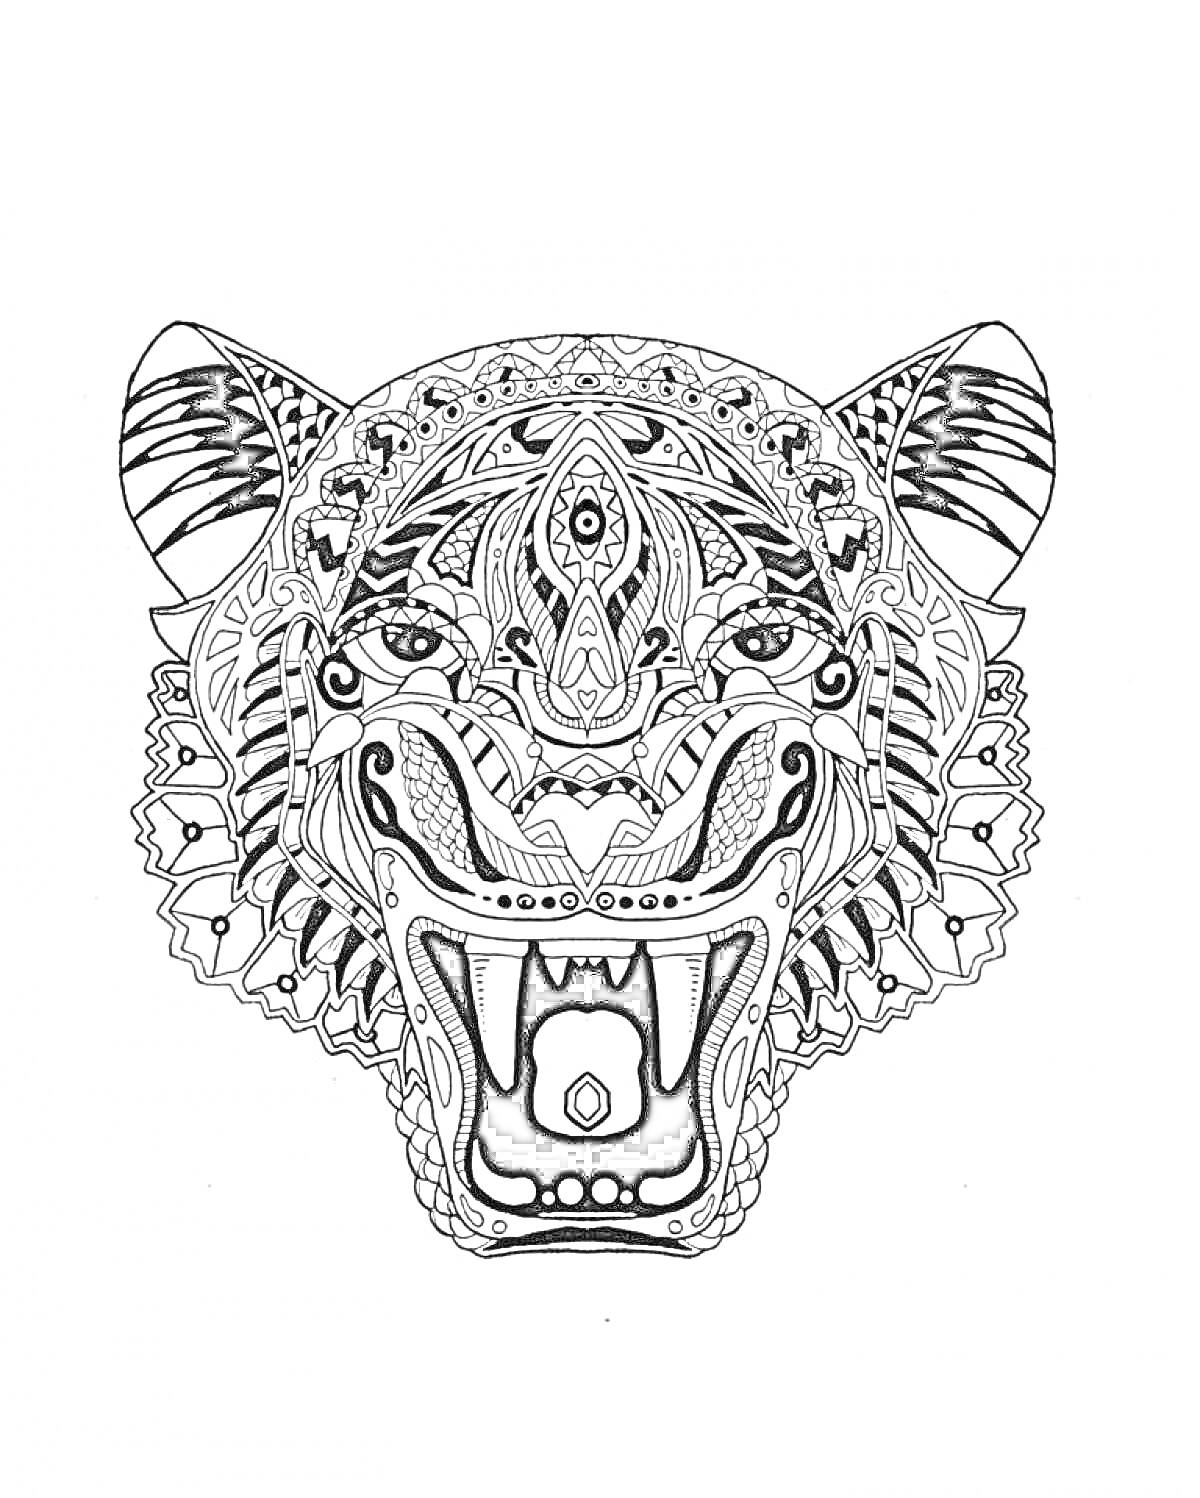 Раскраска Тигр с открылой пастью в антистрессовом раскрасочном стиле, с детализированными узорами, включая спирали, точки и цветочные орнаменты